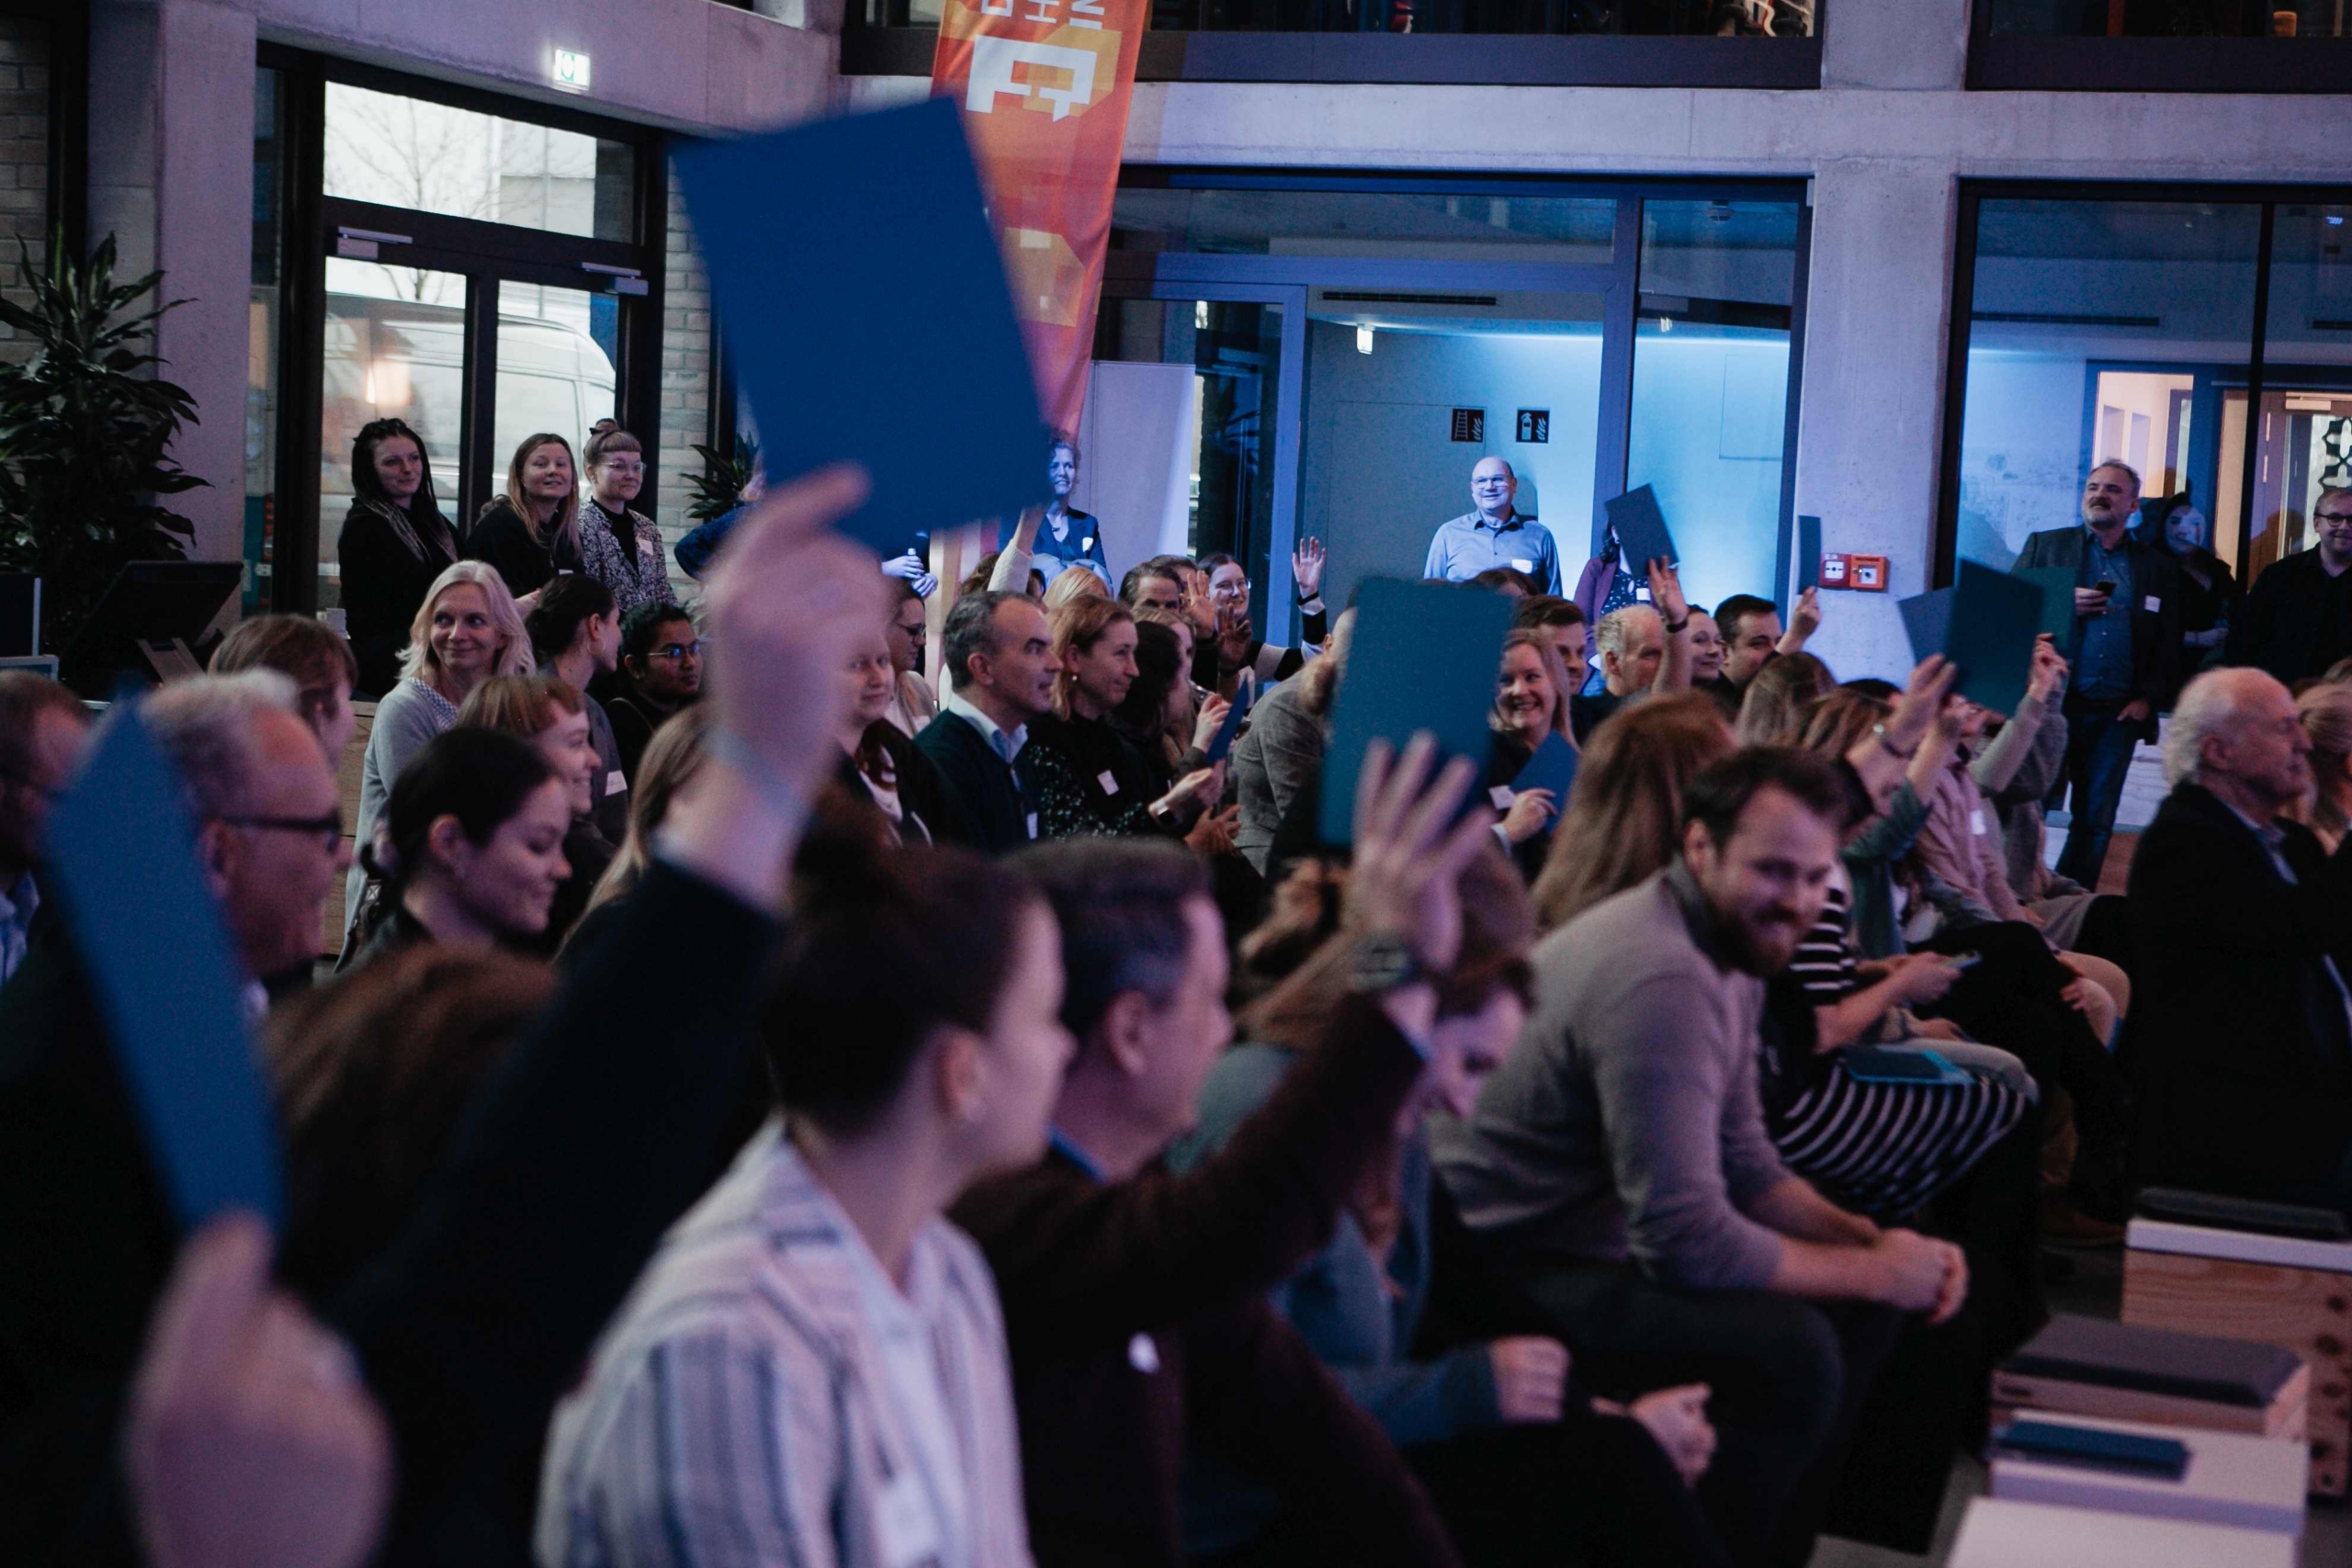 Eine große Gruppe sitzender Menschen agiert auf einer Veranstaltung mit Menschen auf der Bühne außehalb des Fotobereichs. Einige halten blaue Karten in der Hand.in die Luft.